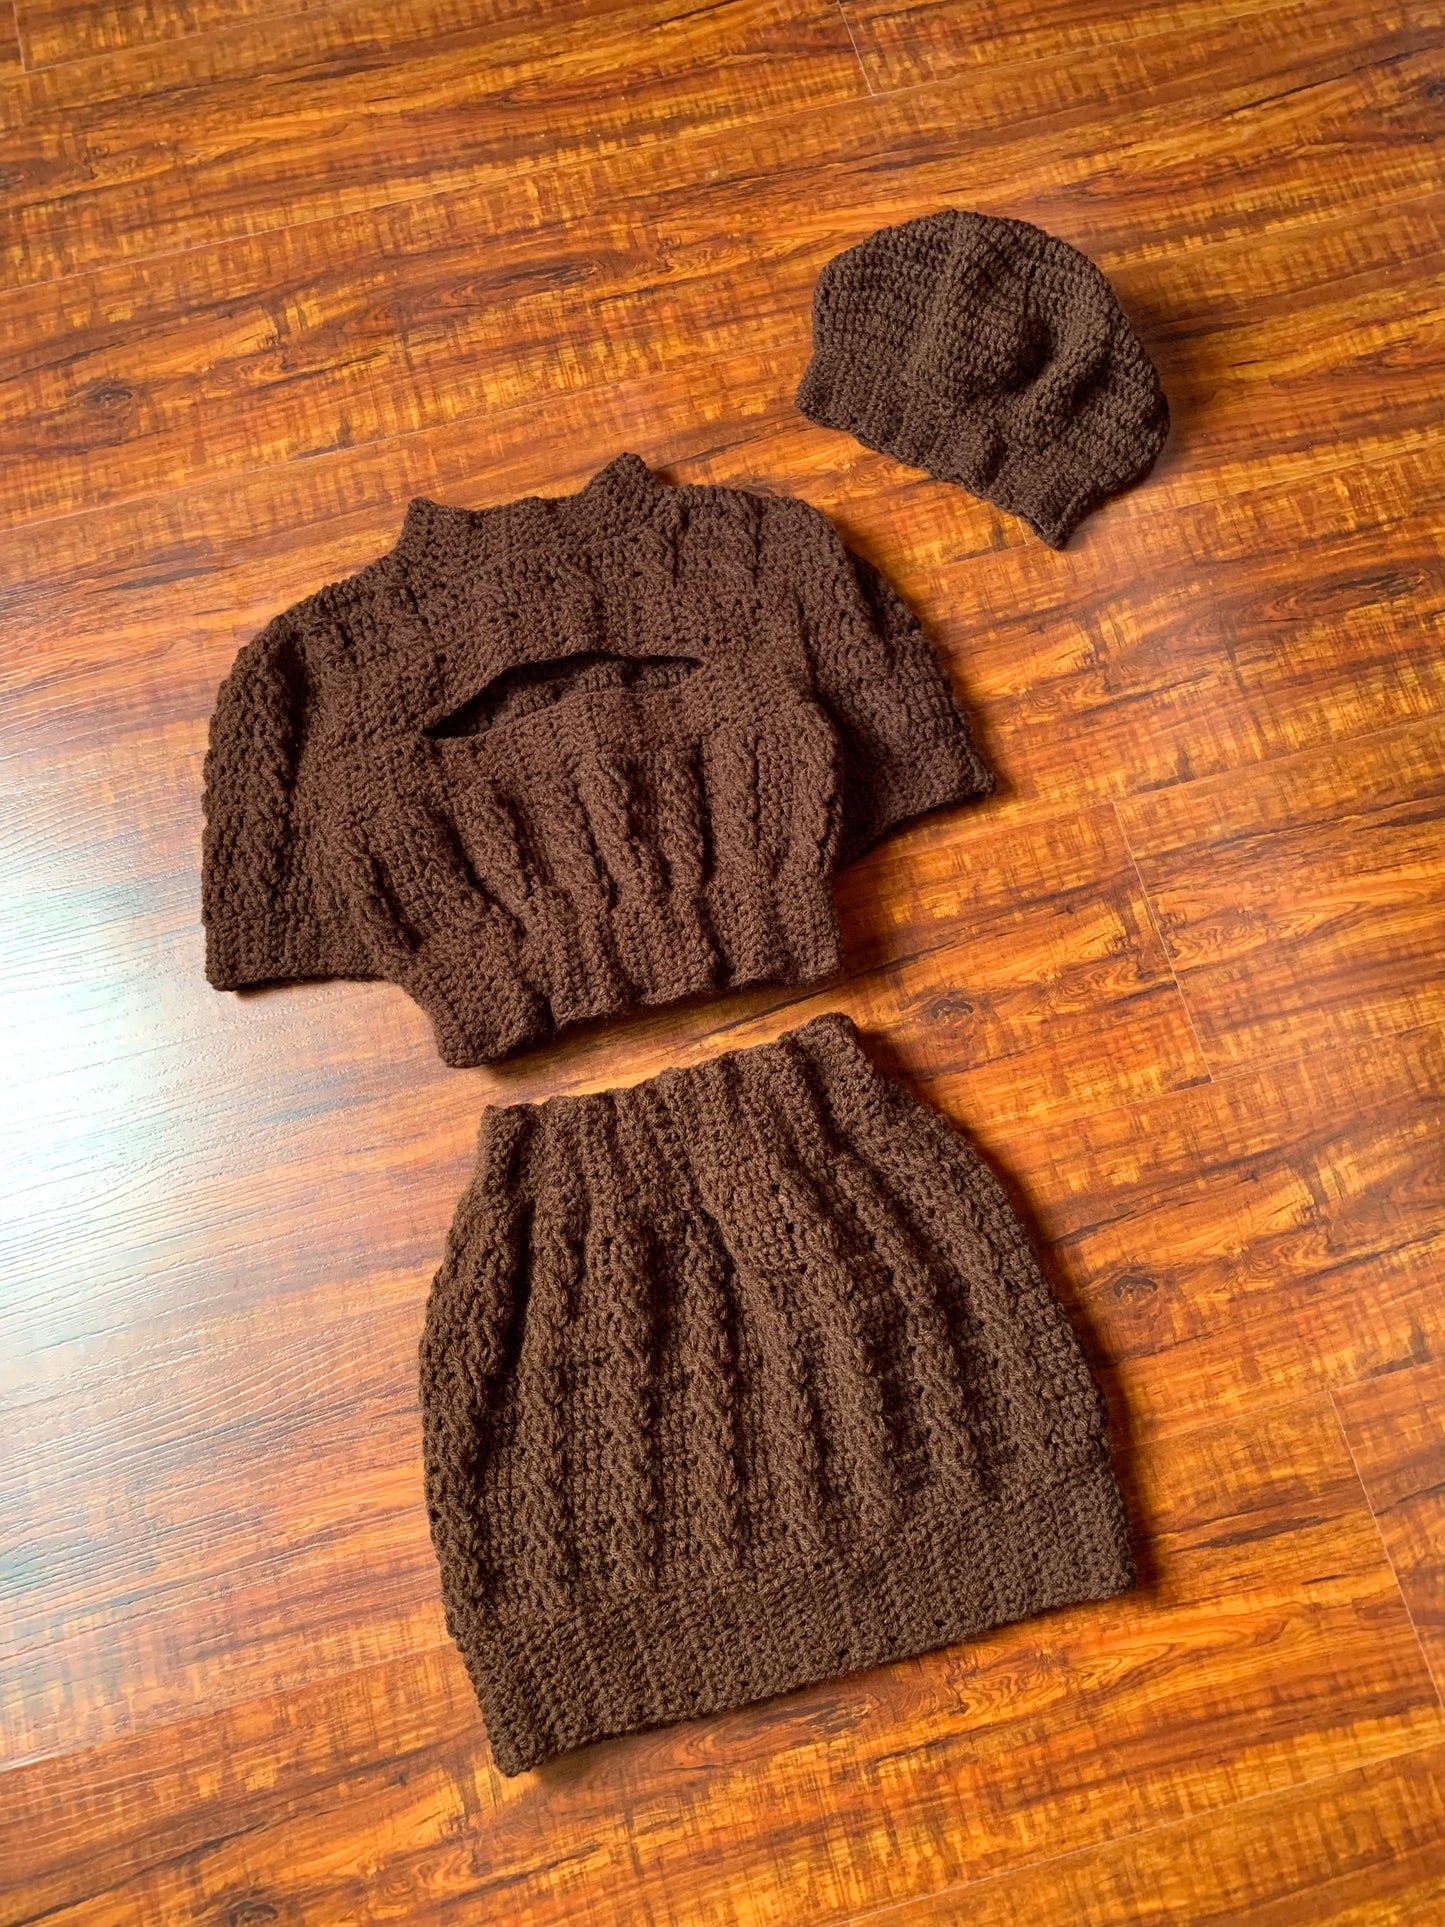 Blair Crochet Skirt Set